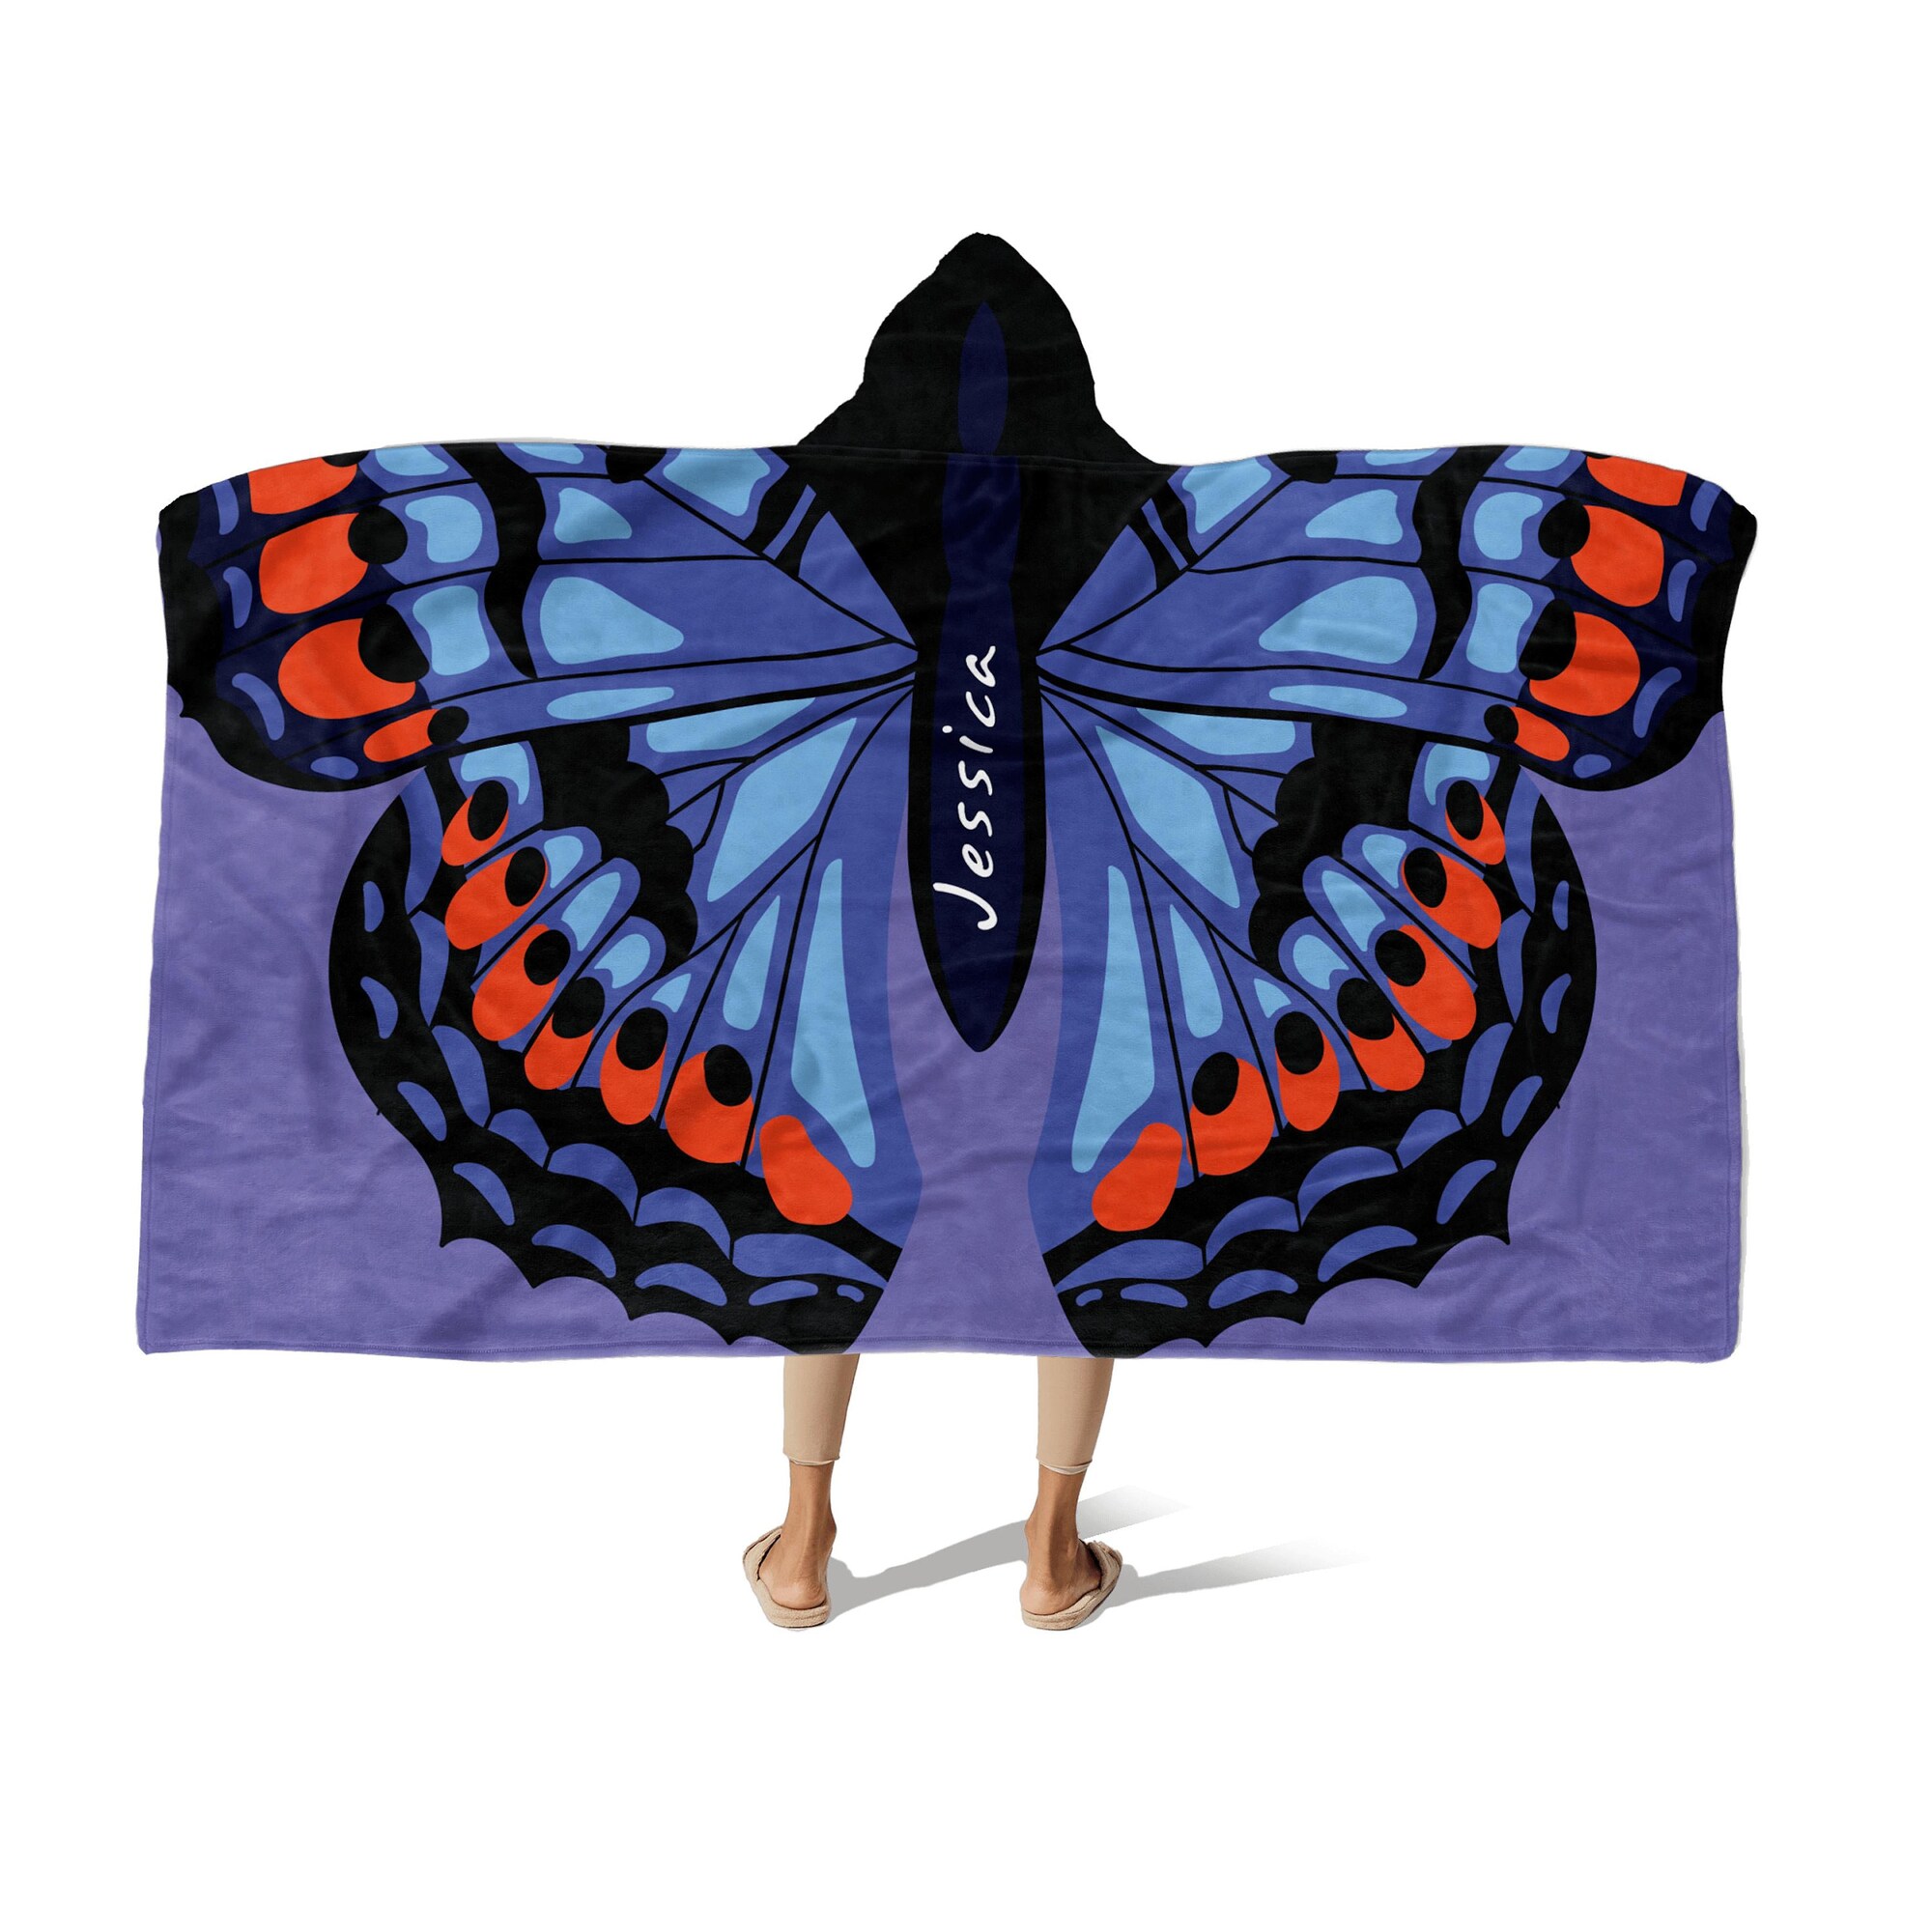 Discover Hooded Fleece Blanket: Butterfly Wings